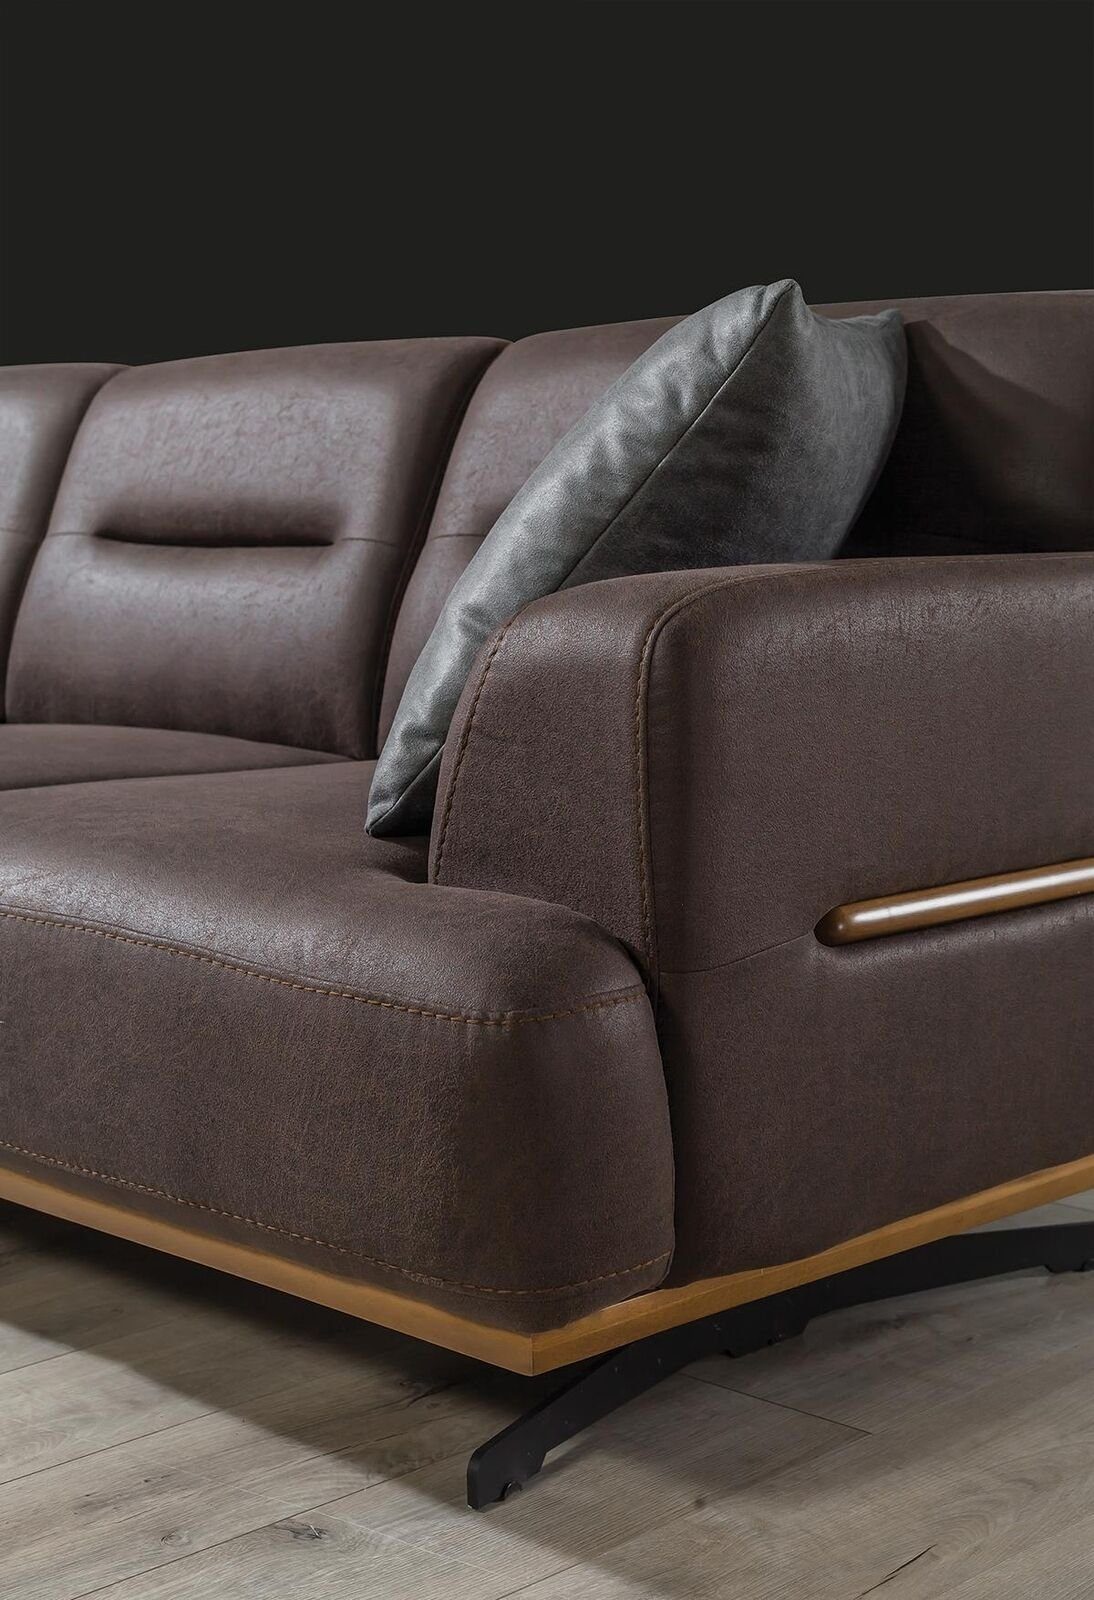 Dreisitzer JVmoebel Made Teile, Braun in Sofa Europa Luxus Couch Wohnzimmer Einrichtung Sofa Polster, 1